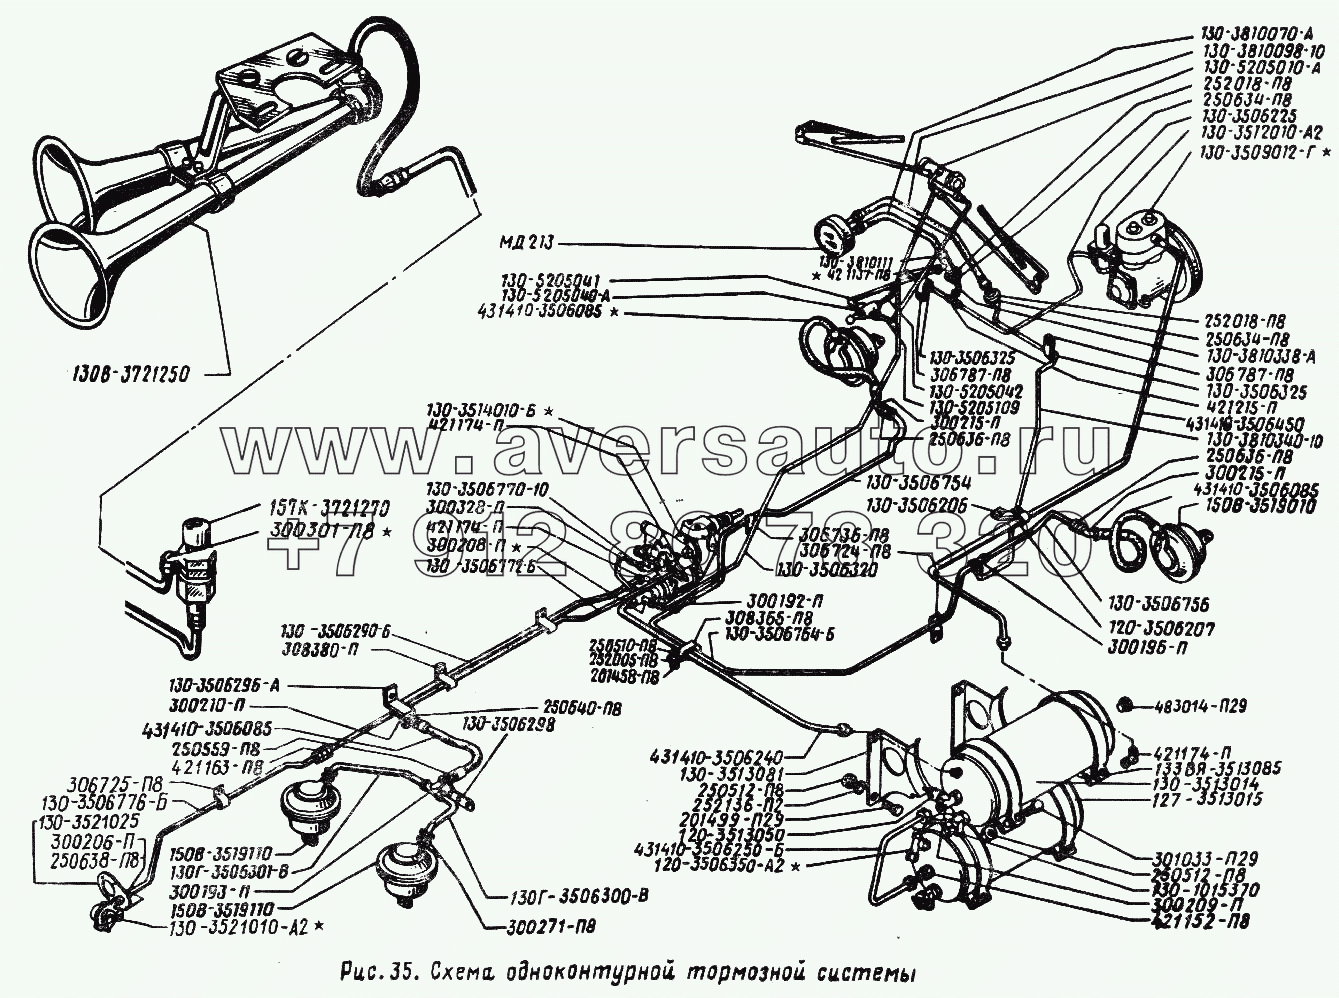 Схема одноконтурной тормозной системы